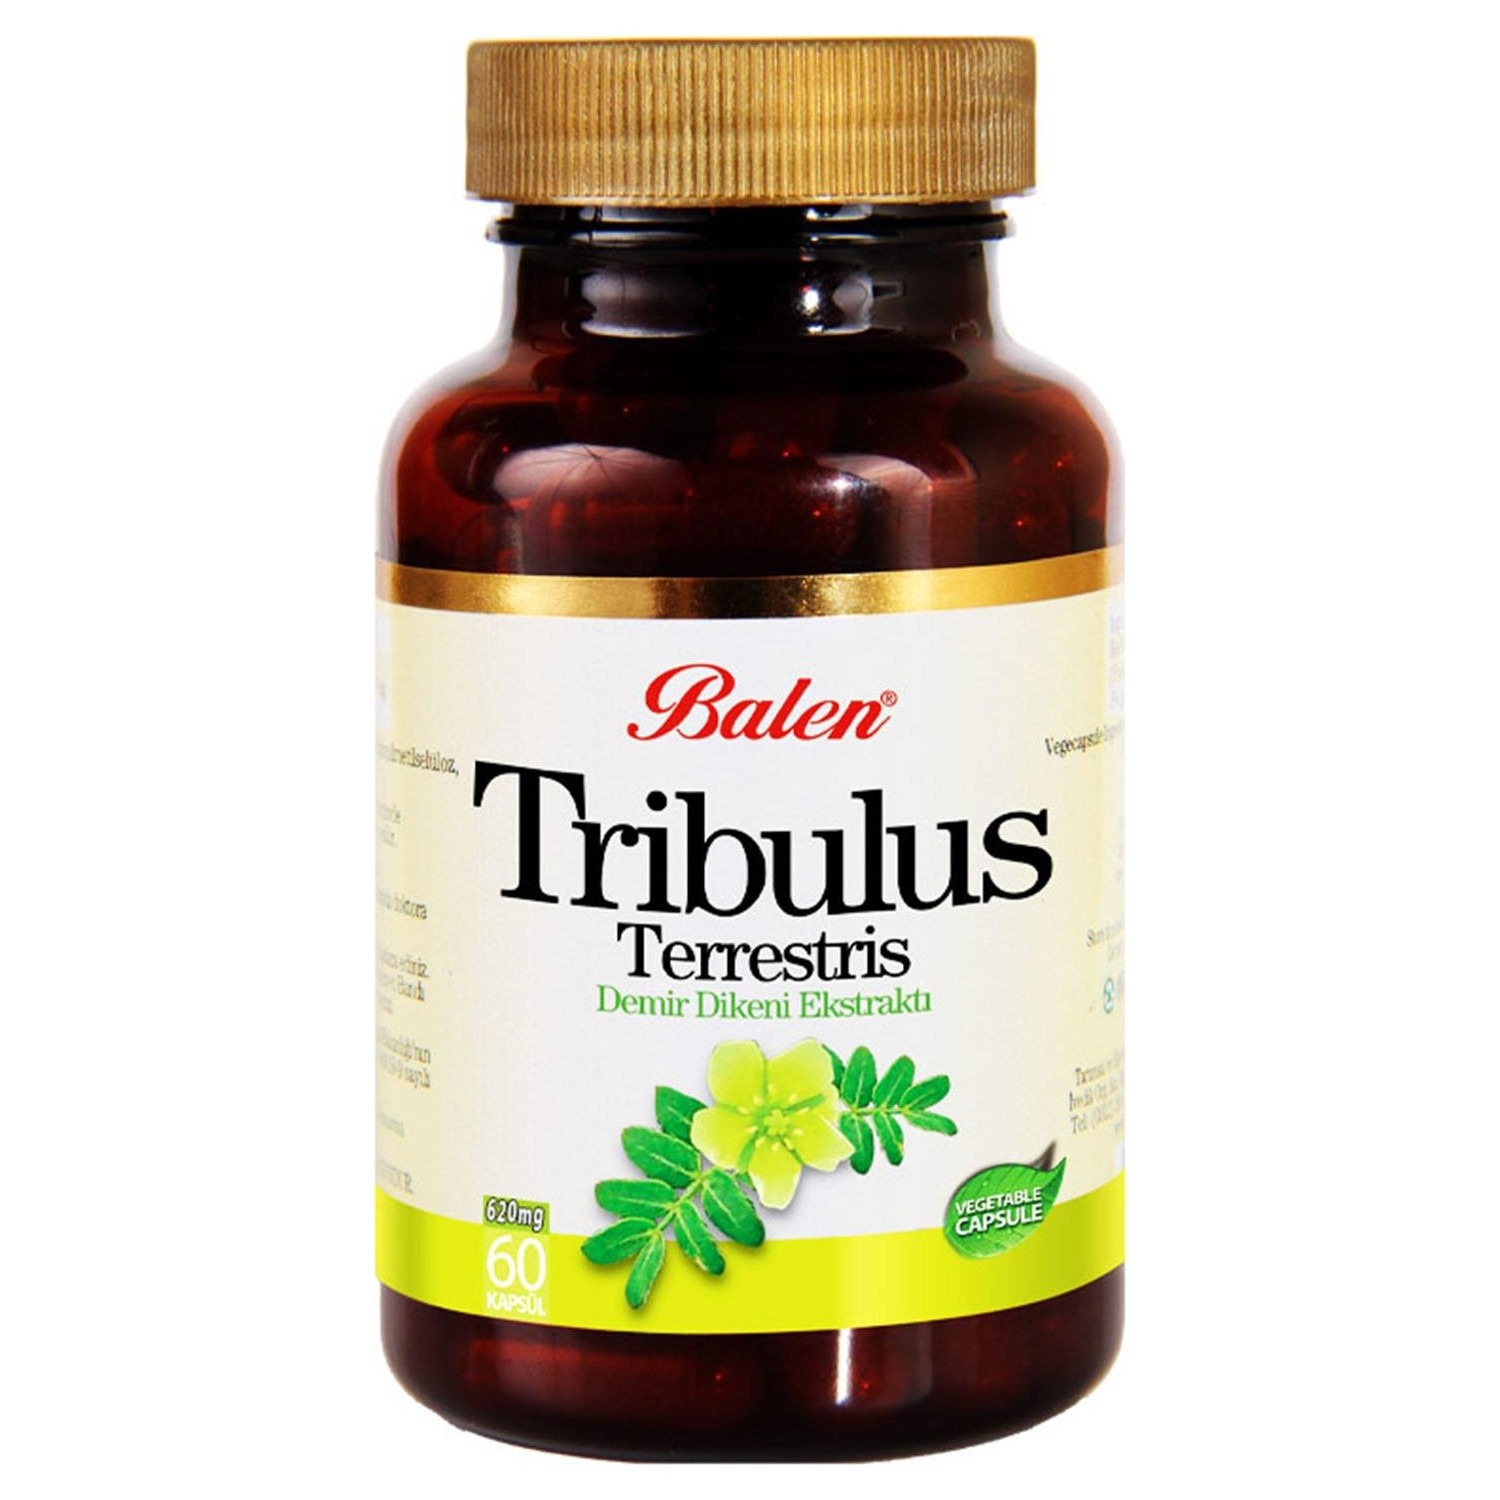 Пищевая добавка Balen Tribulus Terrestris 620 мг, 3 упаковки по 60 капсул